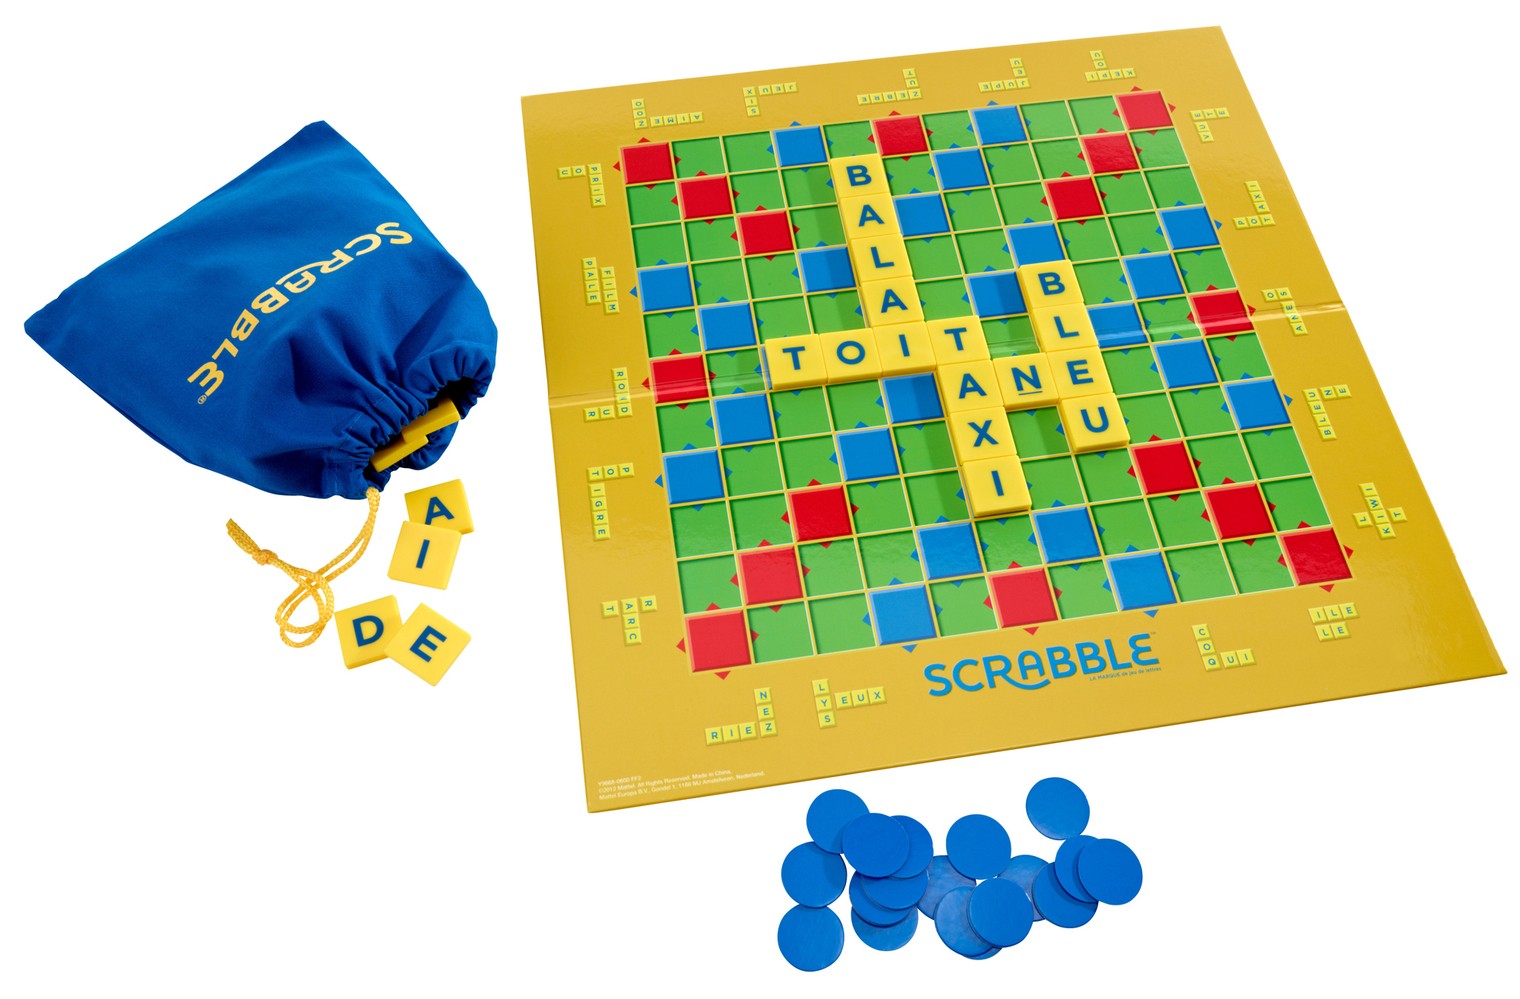 Scrabble Junior: Jeu de mots croisés pour enfants